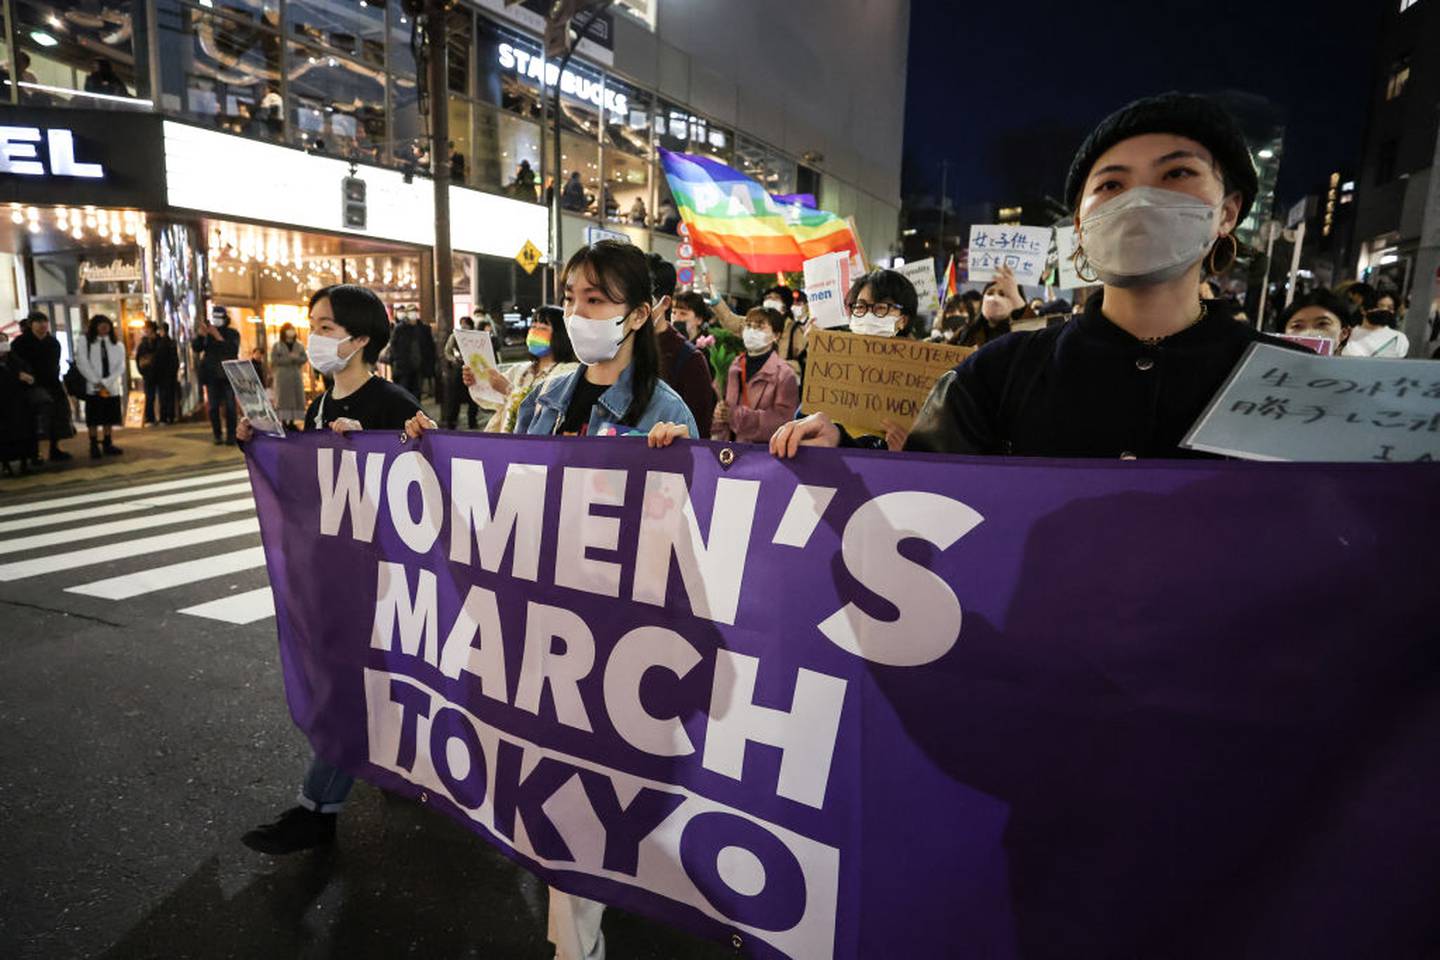 Marcha de mujeres en Tokio usaron cubrebocas pese a marchar en un lugar abierto